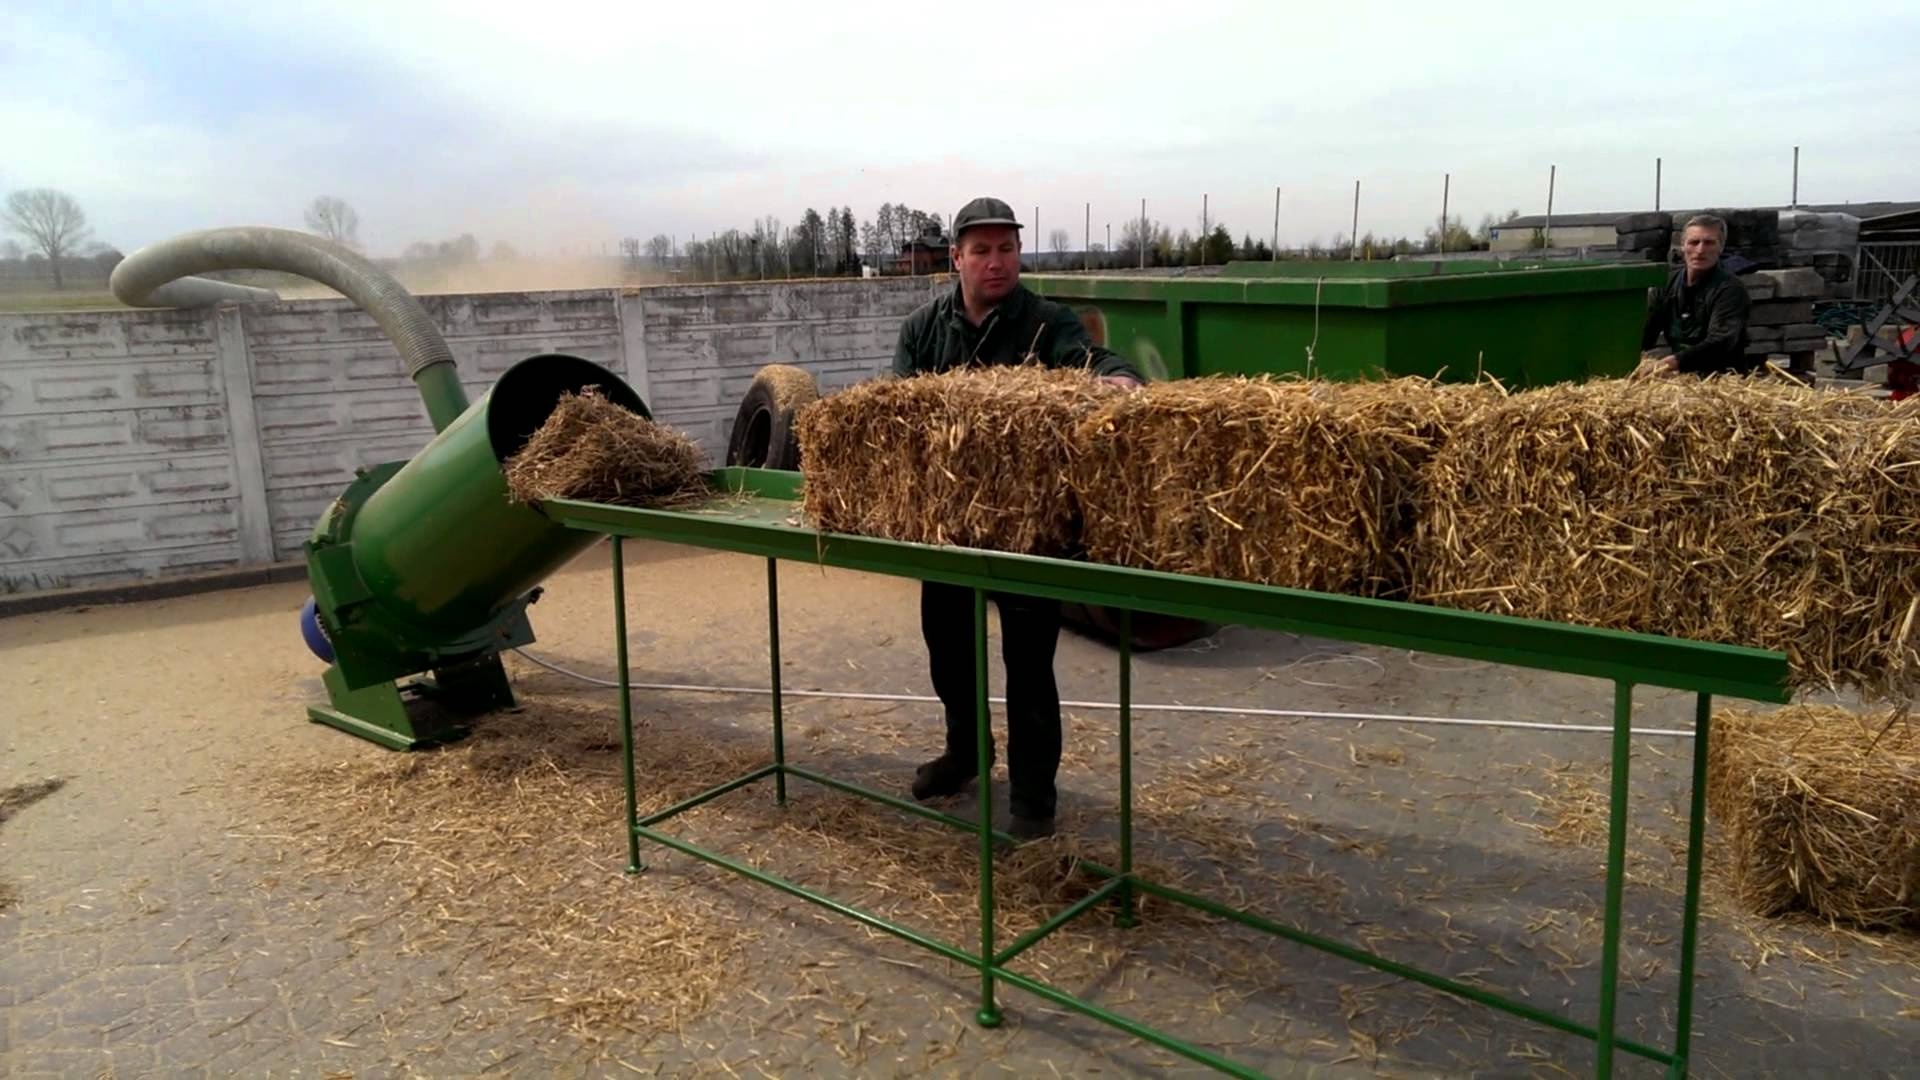 Измельчитель сена и соломы  в Самаре по цене 17 000 руб. - Биржа .